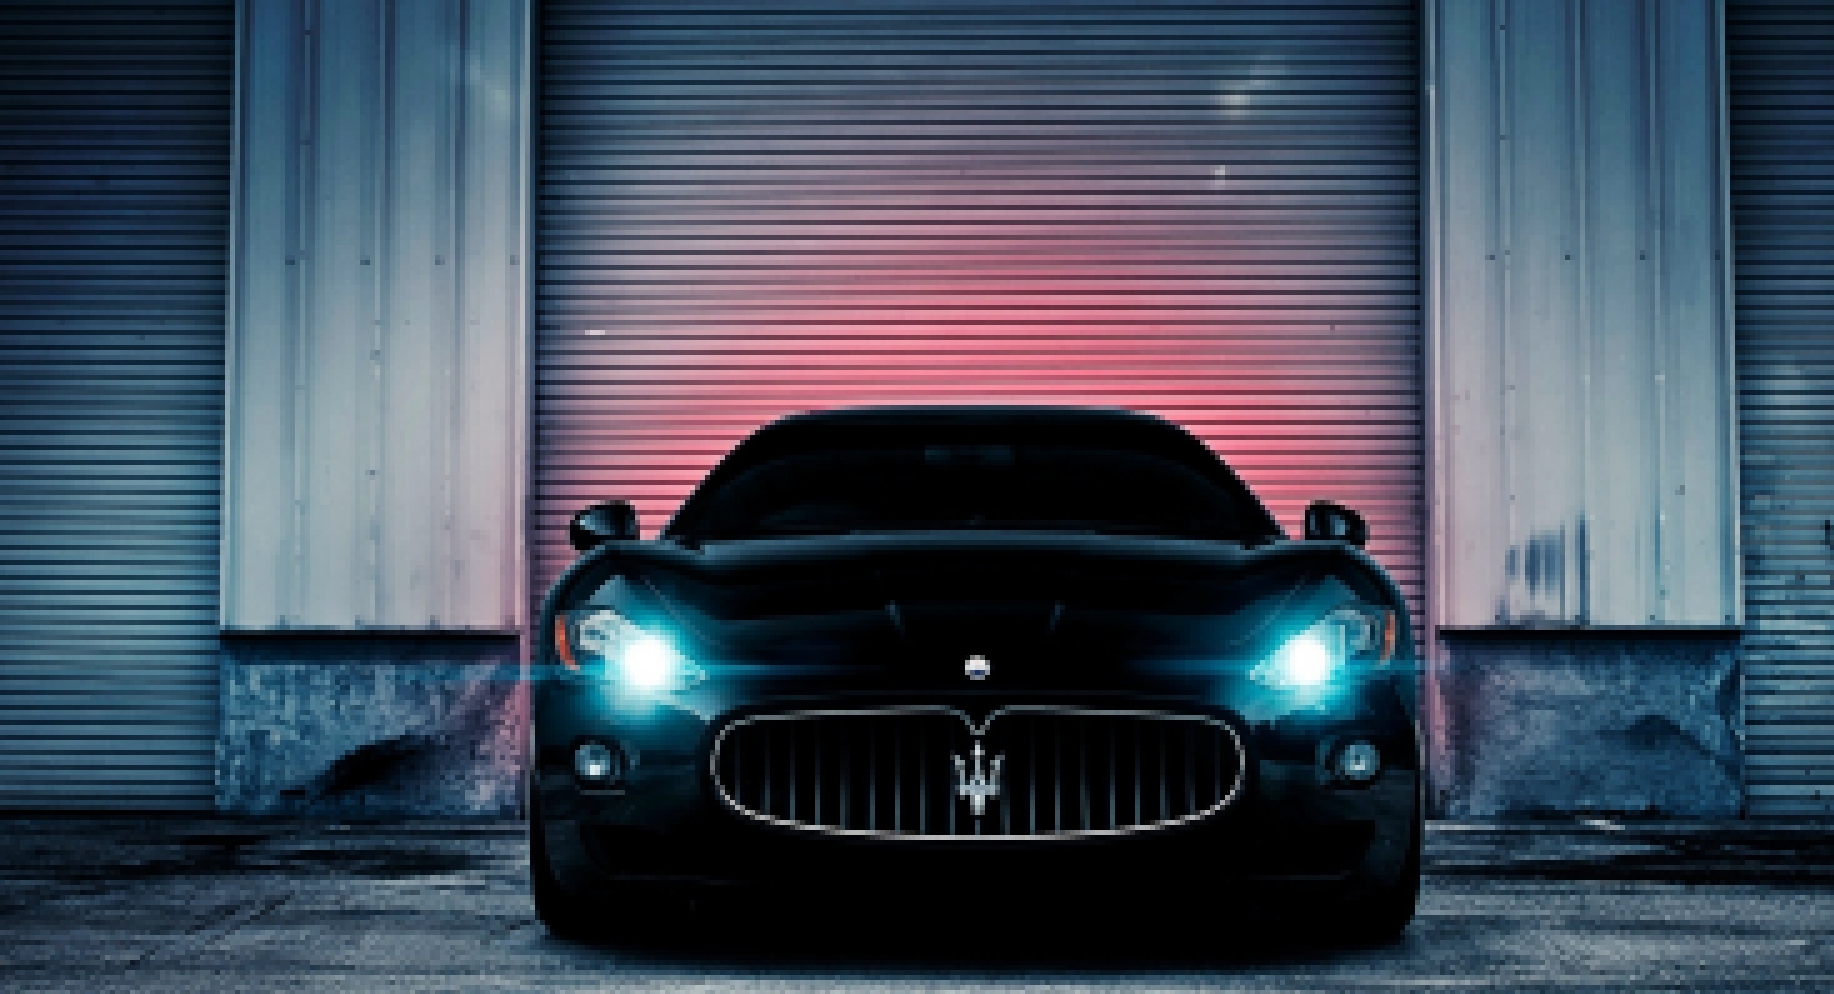 Download Čierna Maserati GranTurismo svetlomety čelný pohľad 1280x1024 wall...